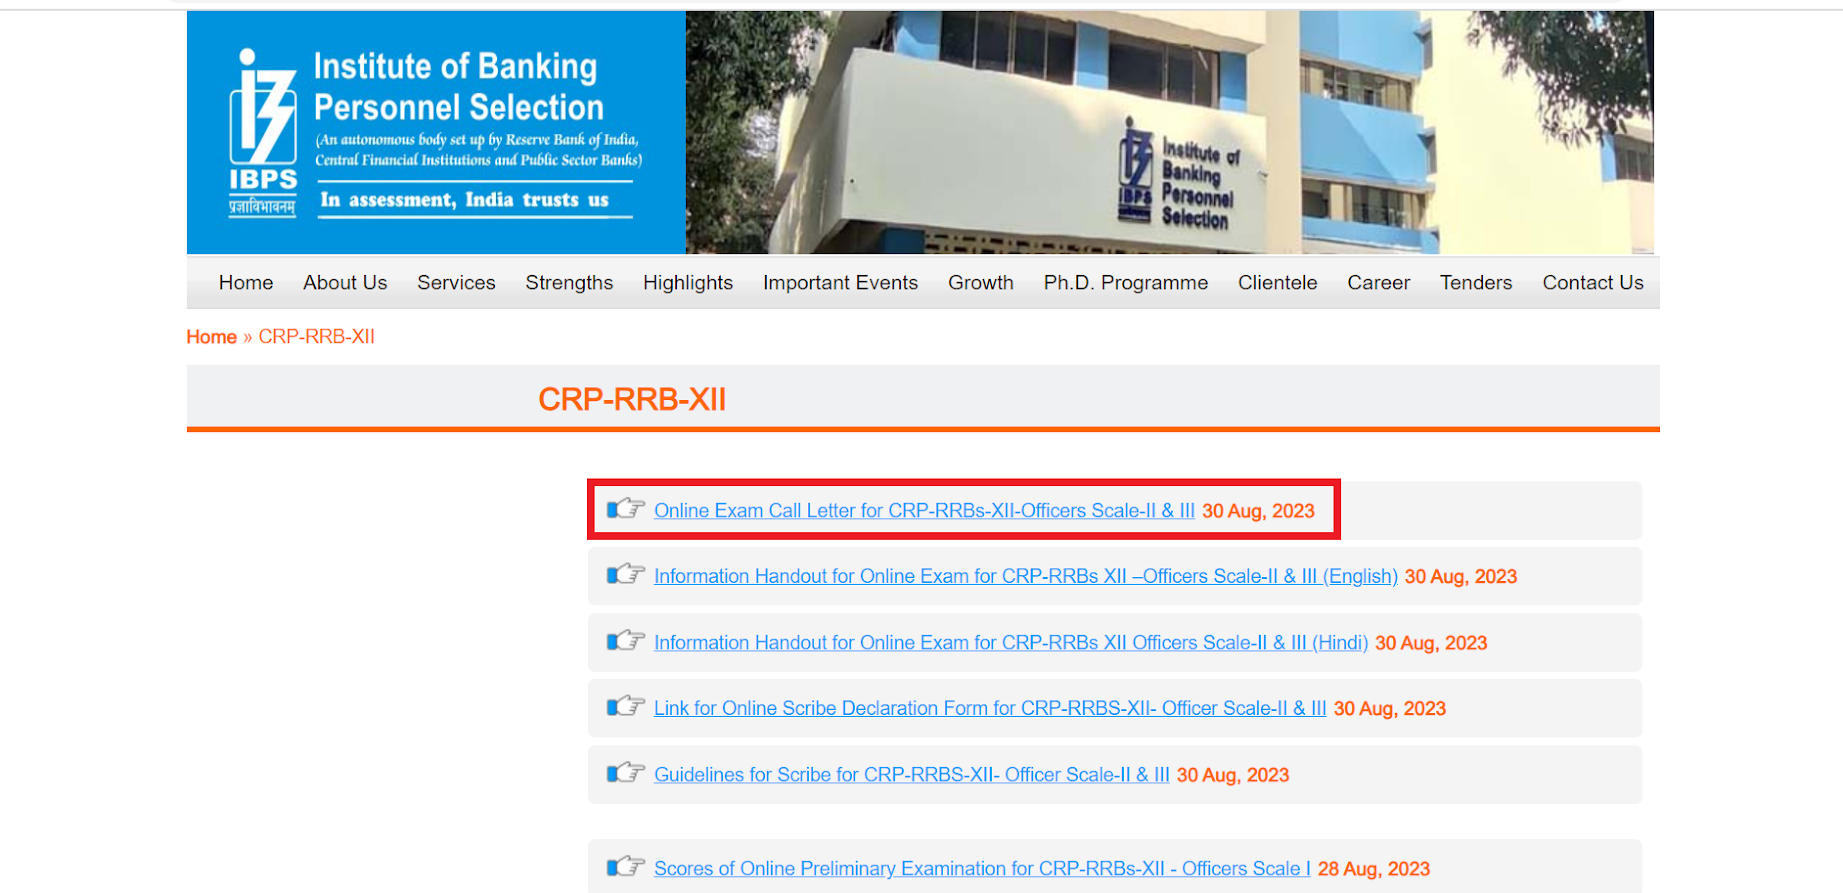 IBPS RRB Officer Scale 2 and 3 Admit Card 2023 Out: IBPS RRB अधिकारी स्केल 2 और 3 एडमिट कार्ड 2023 जारी, यहाँ से करें डाउनलोड | Latest Hindi Banking jobs_3.1